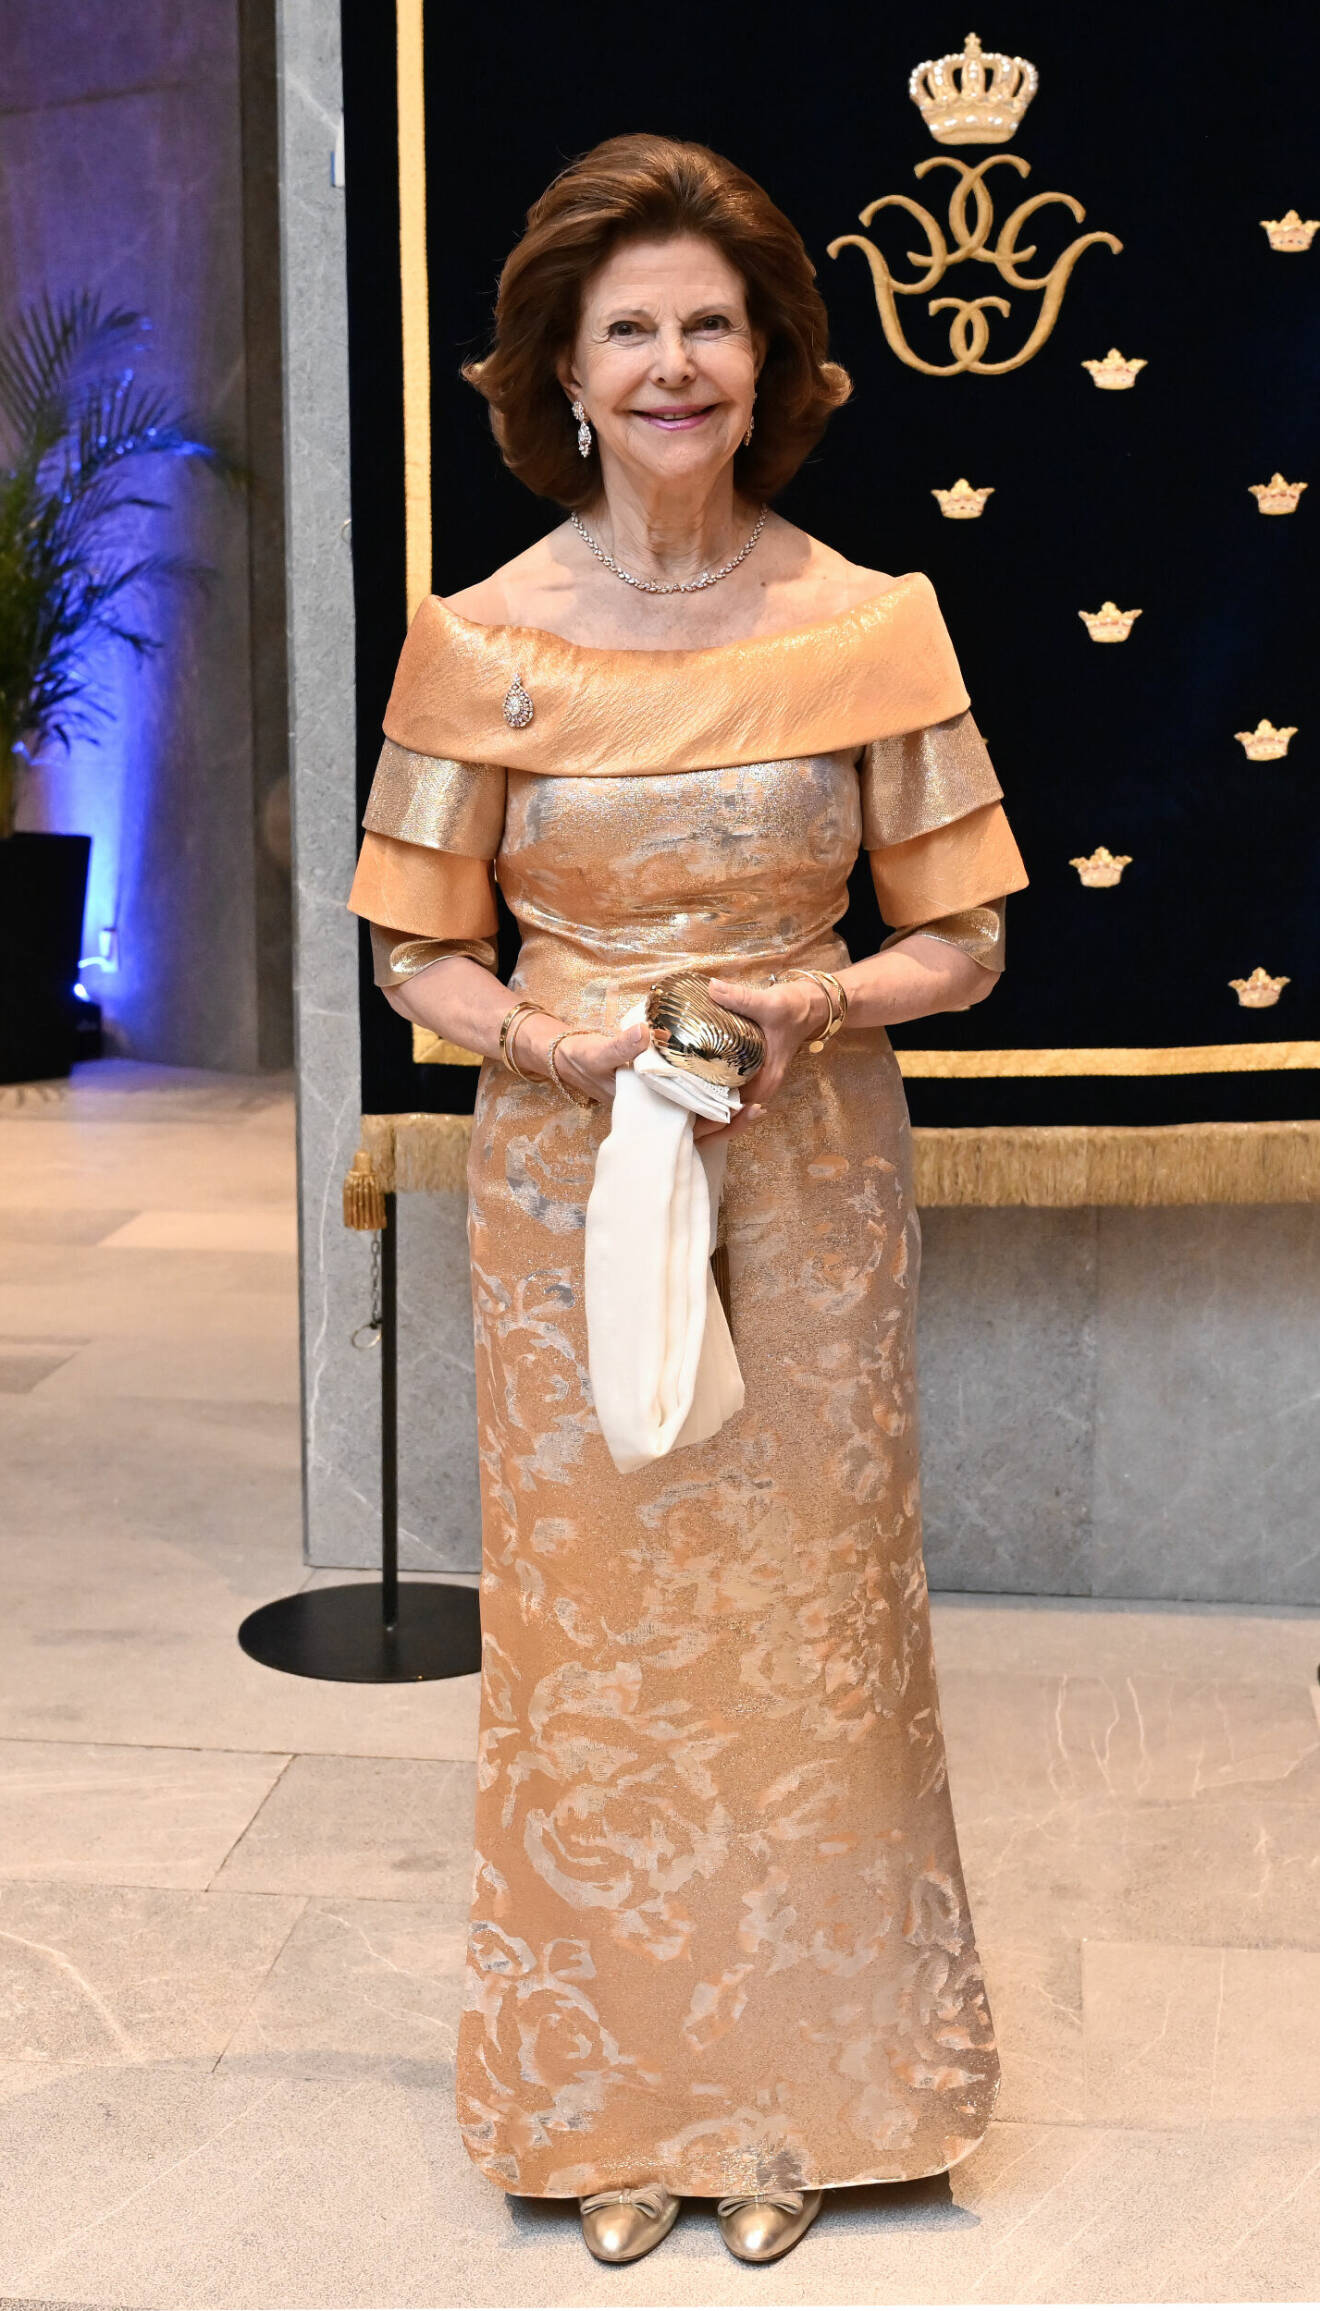 Statsbesök i Mexiko: Drottning Silvia i aftonklänning i aprikos och guld